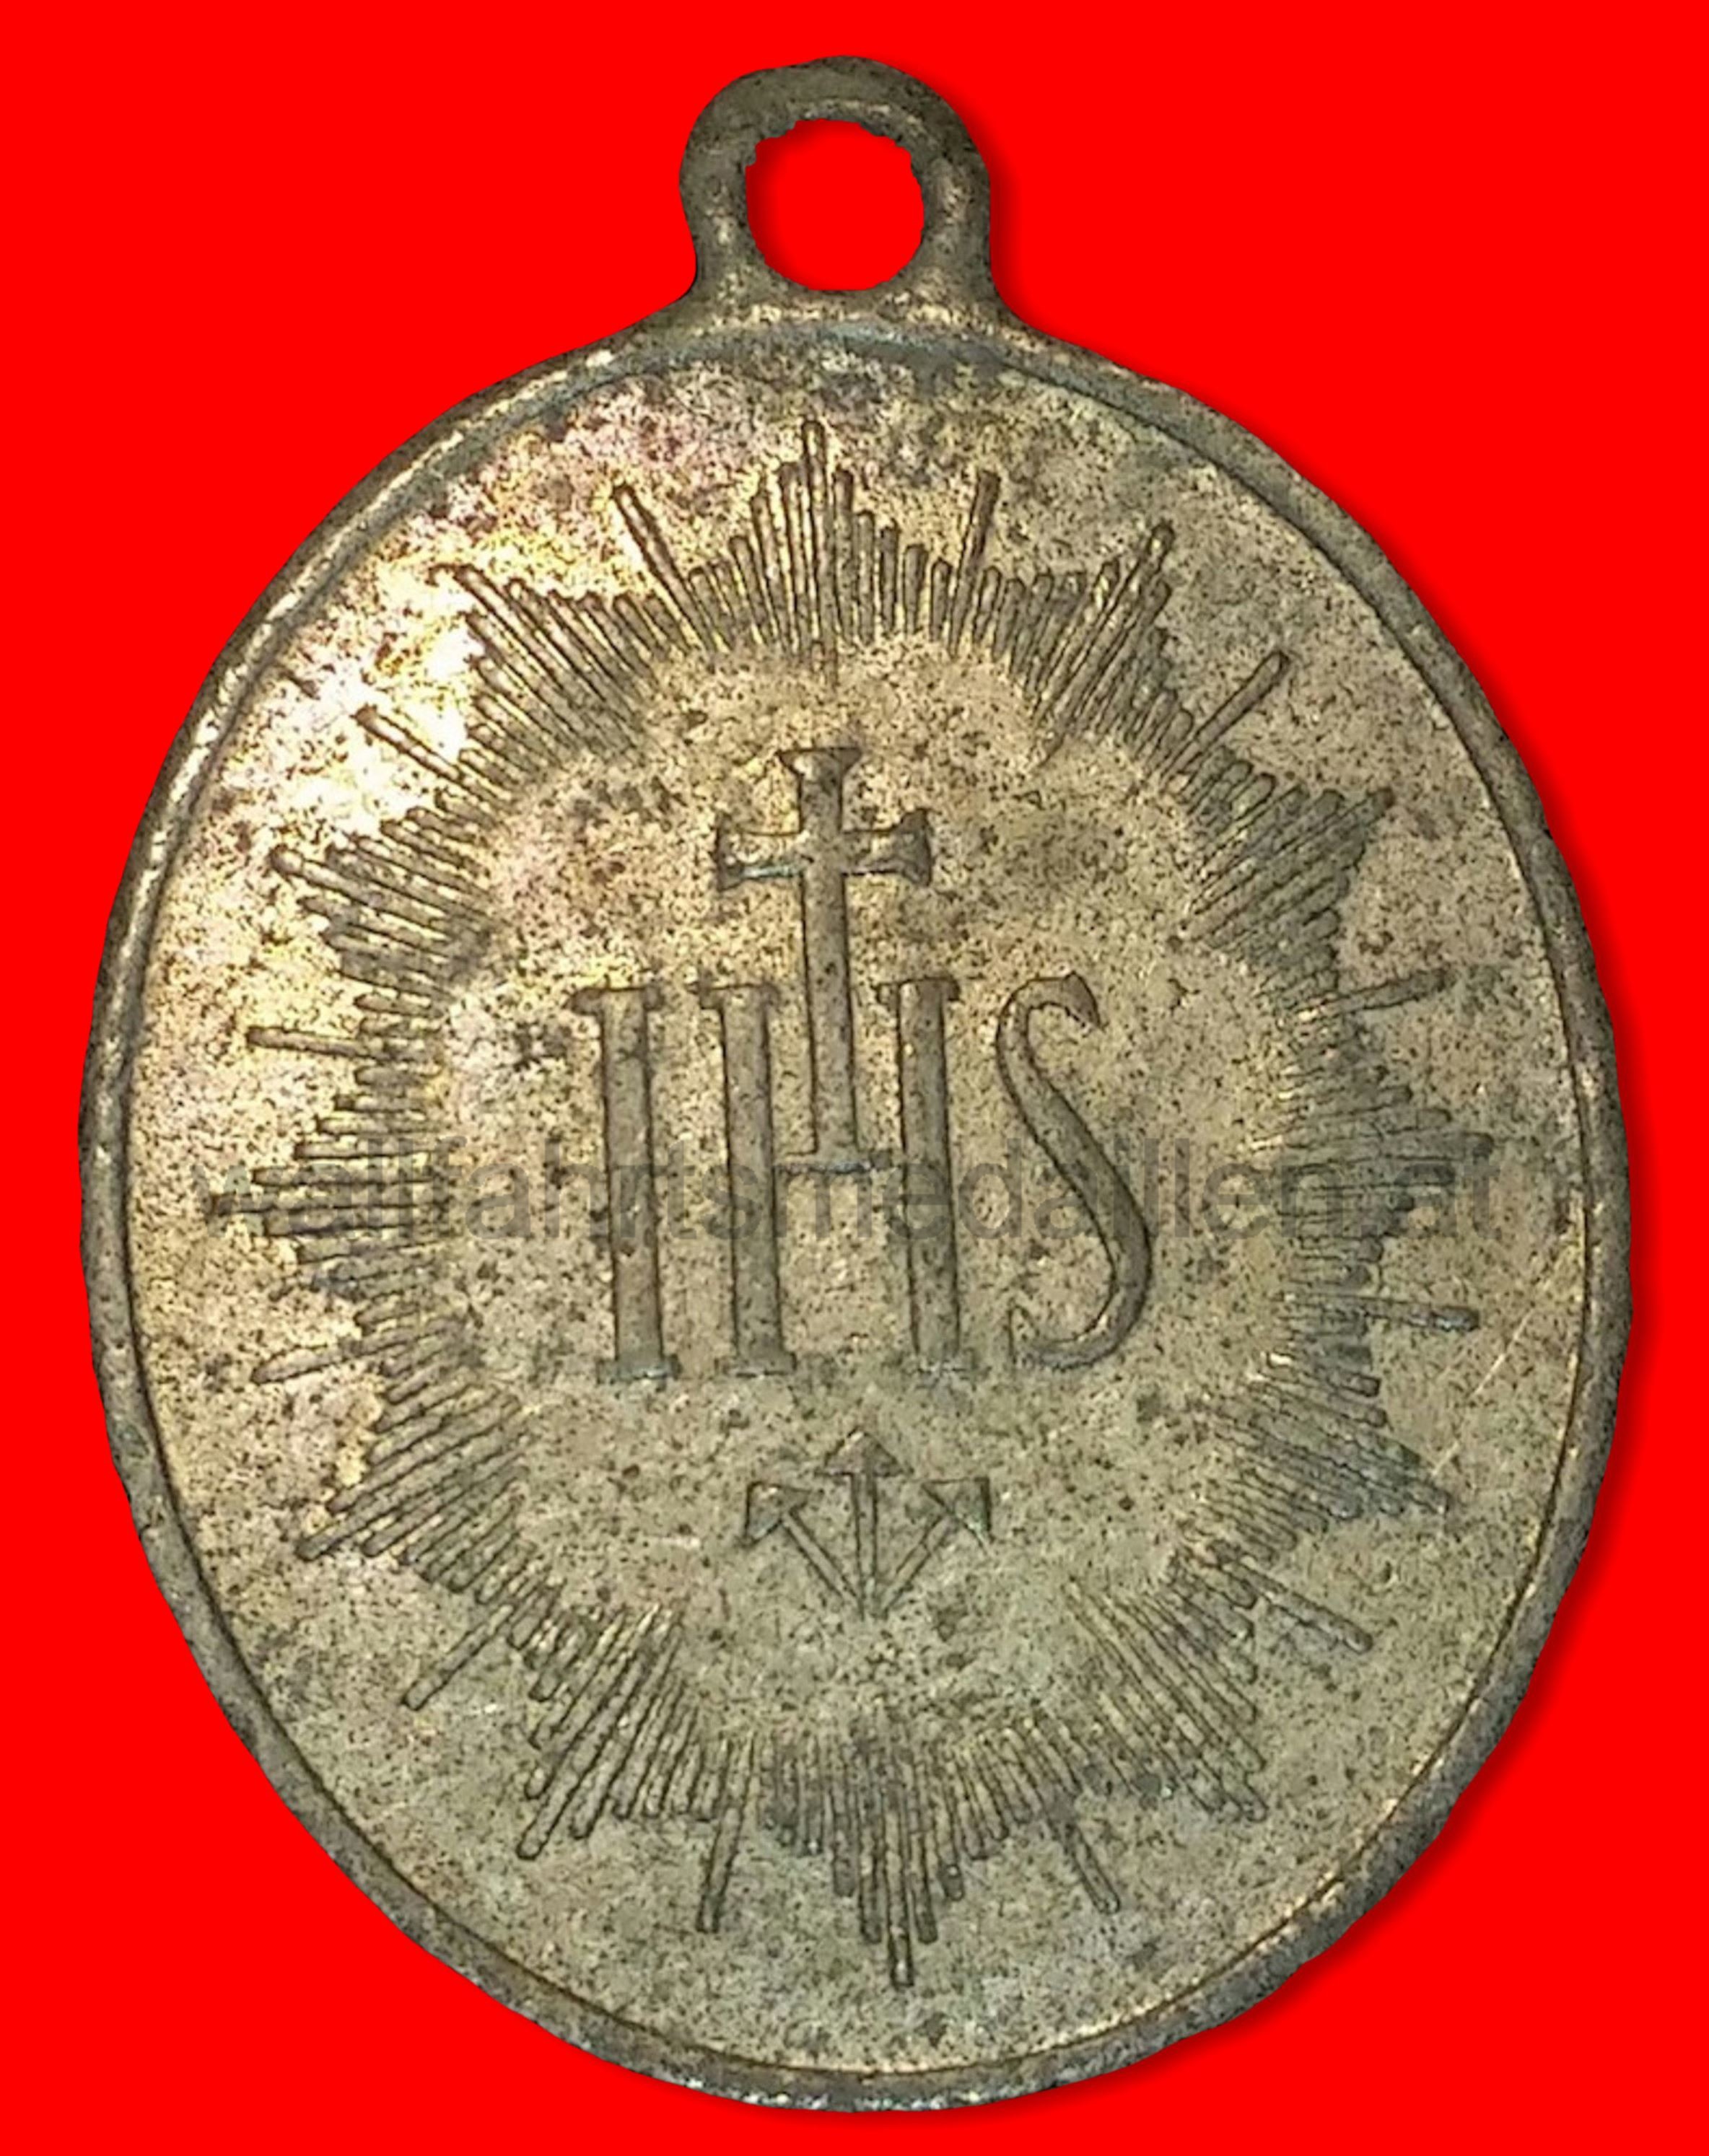 Das Ordensymbol der Jesuiten